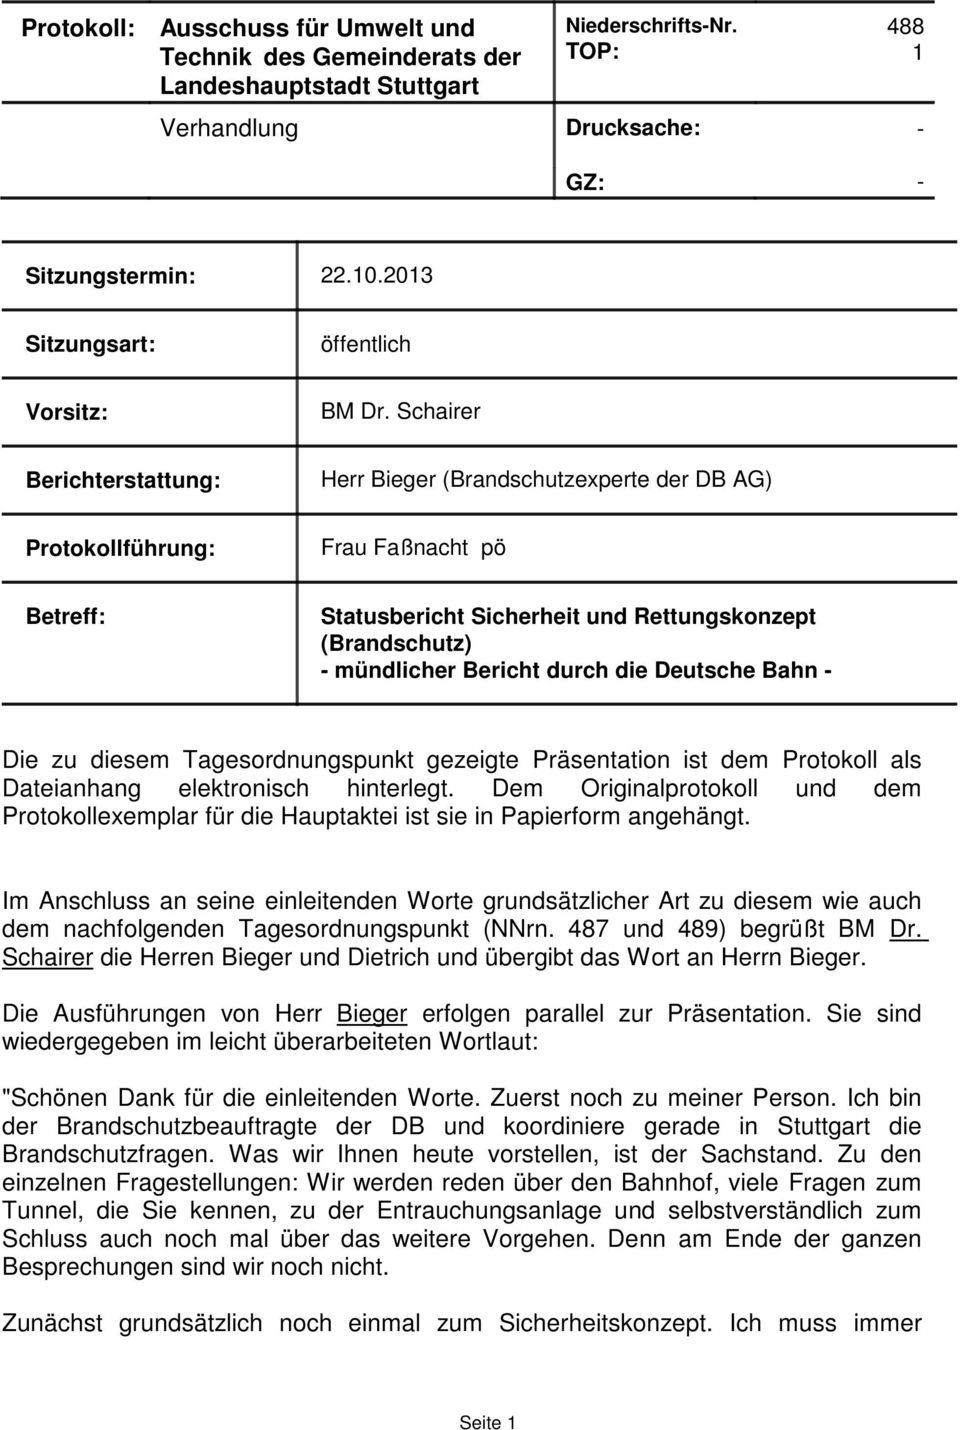 Schairer Berichterstattung: Herr Bieger (Brandschutzexperte der DB AG) Protokollführung: Frau Faßnacht pö Betreff: Statusbericht Sicherheit und Rettungskonzept (Brandschutz) - mündlicher Bericht